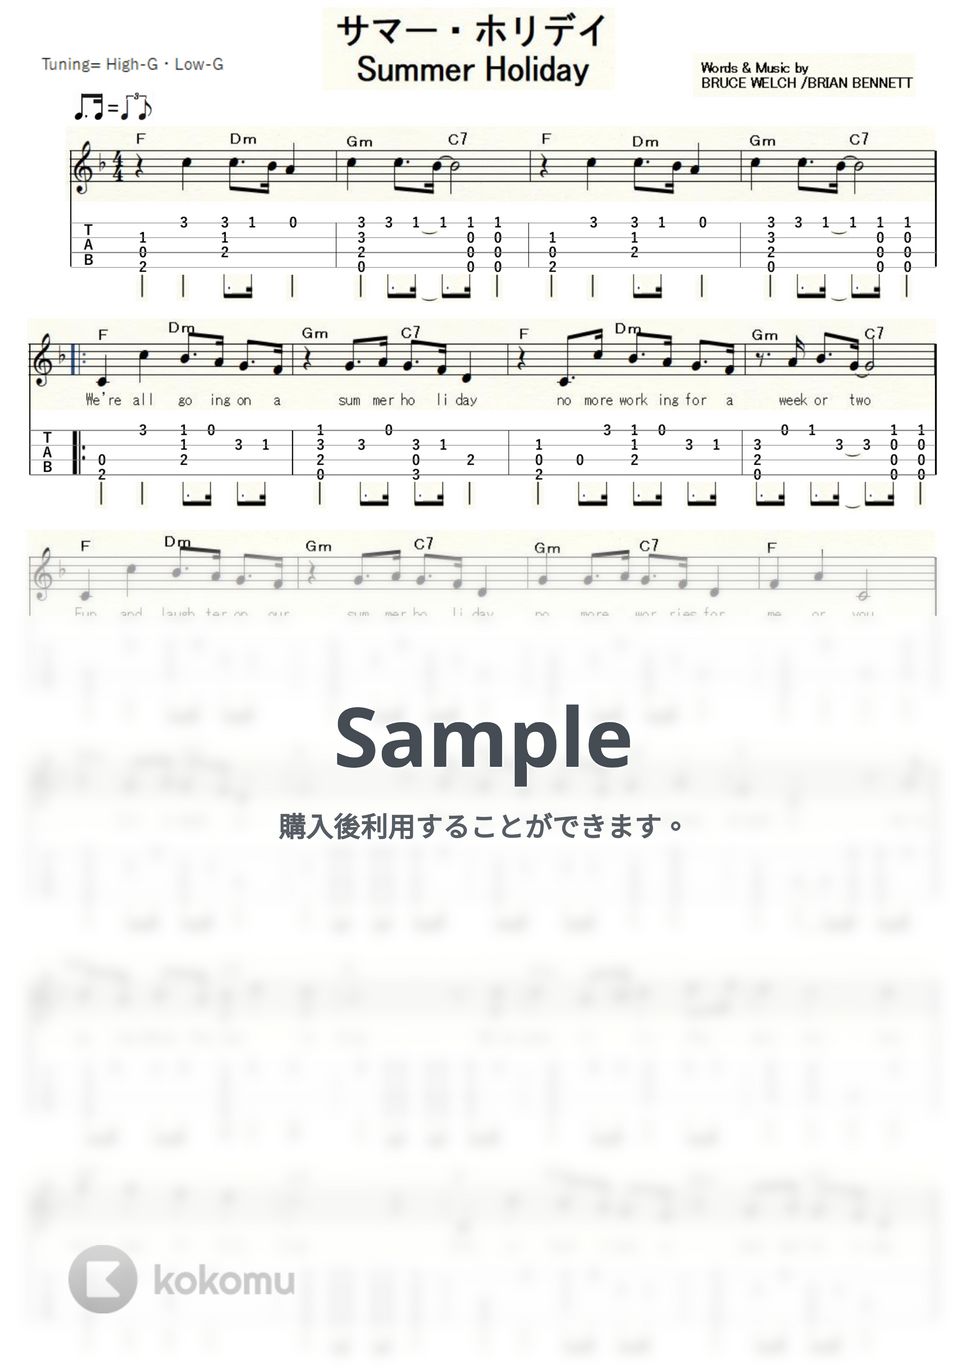 クリフ・リチャード - SUMMER HOLIDAY (ｳｸﾚﾚｿﾛ/High-G・Low-G/中級) by ukulelepapa